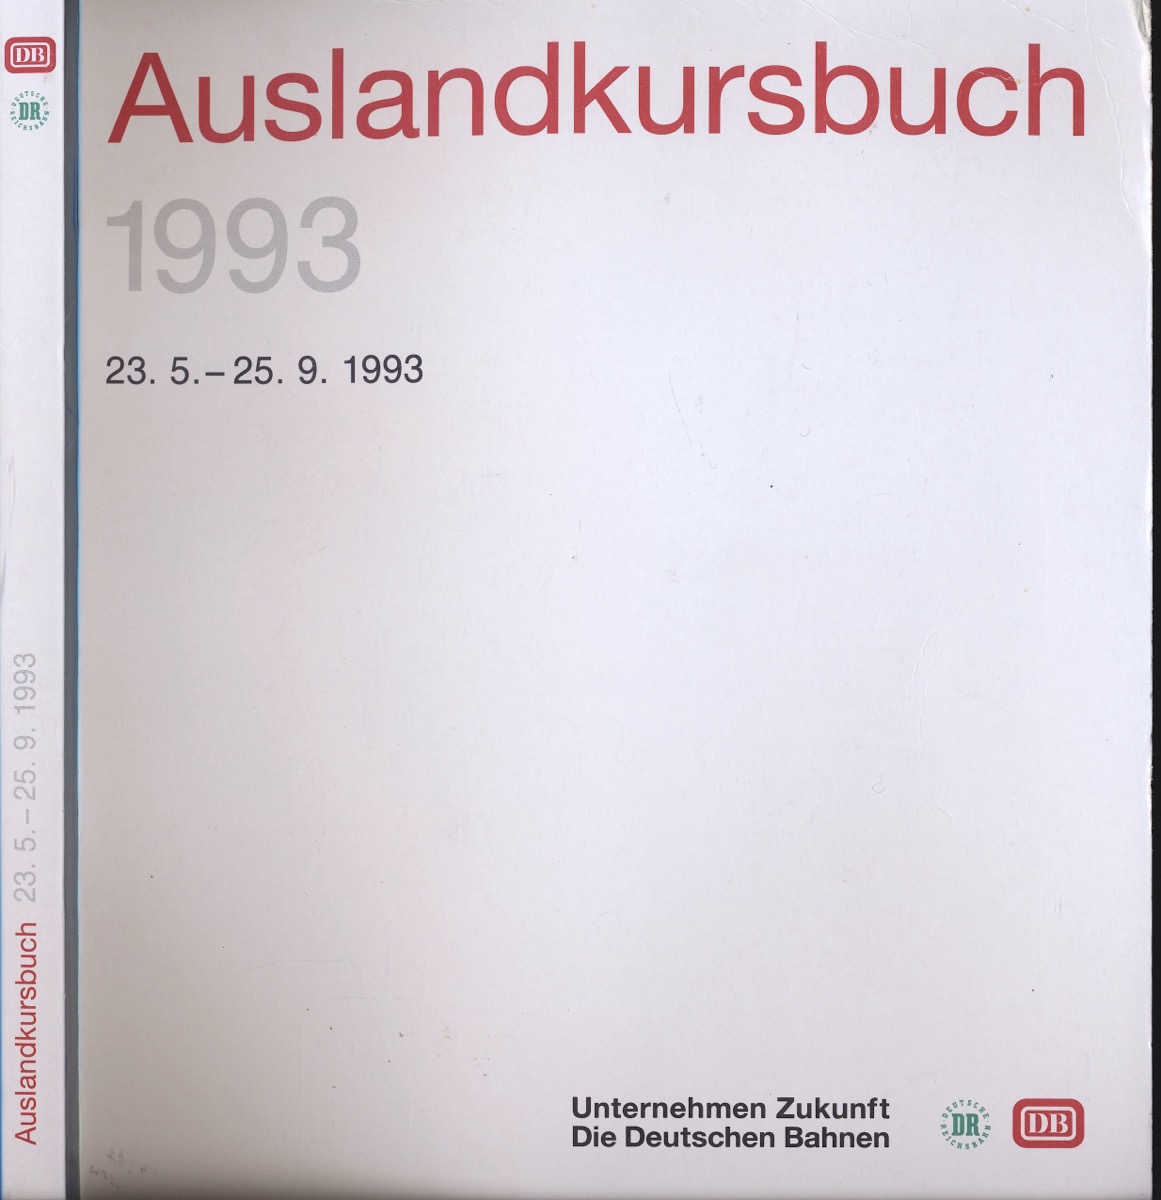 DEUTSCHE BAHN (Hrg.)  Deutsche Bahn (DB) Auslandskursbuch 1993, gültig vom 23.5.1993 bis 25.9.1994. 